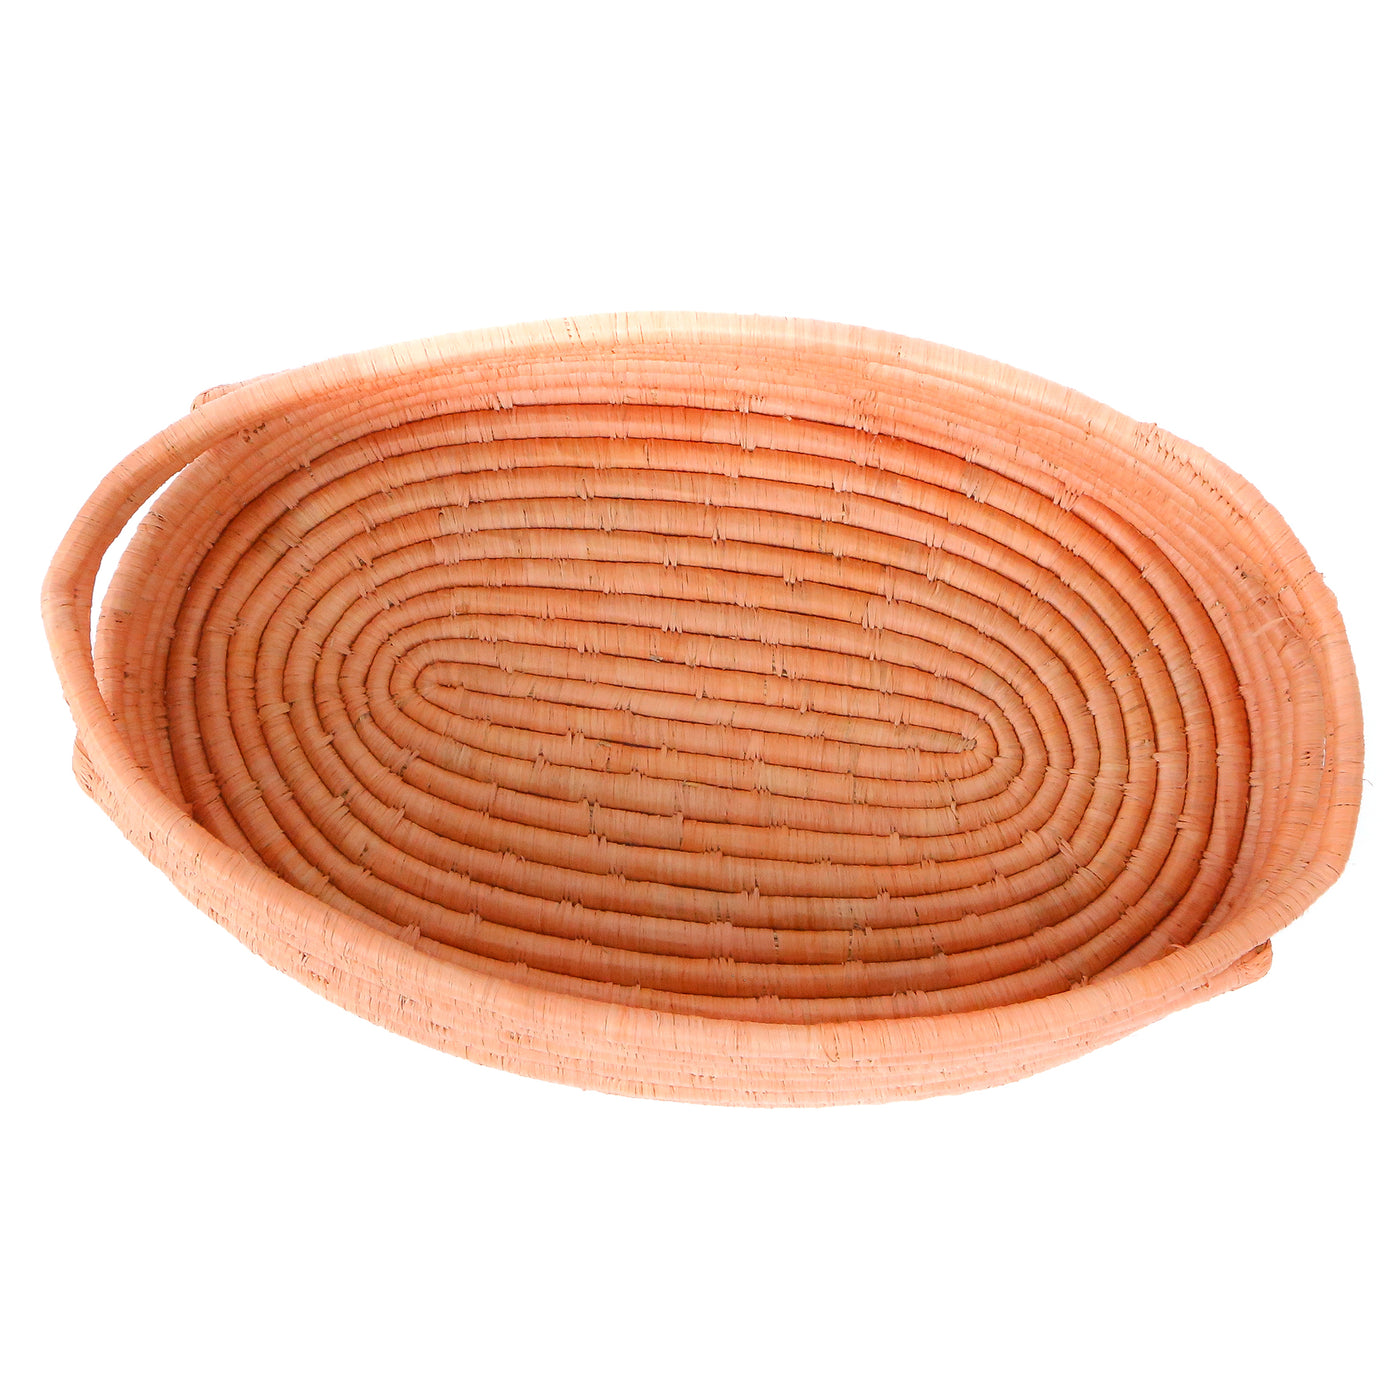 Peach Raffia Bread Basket With Handles